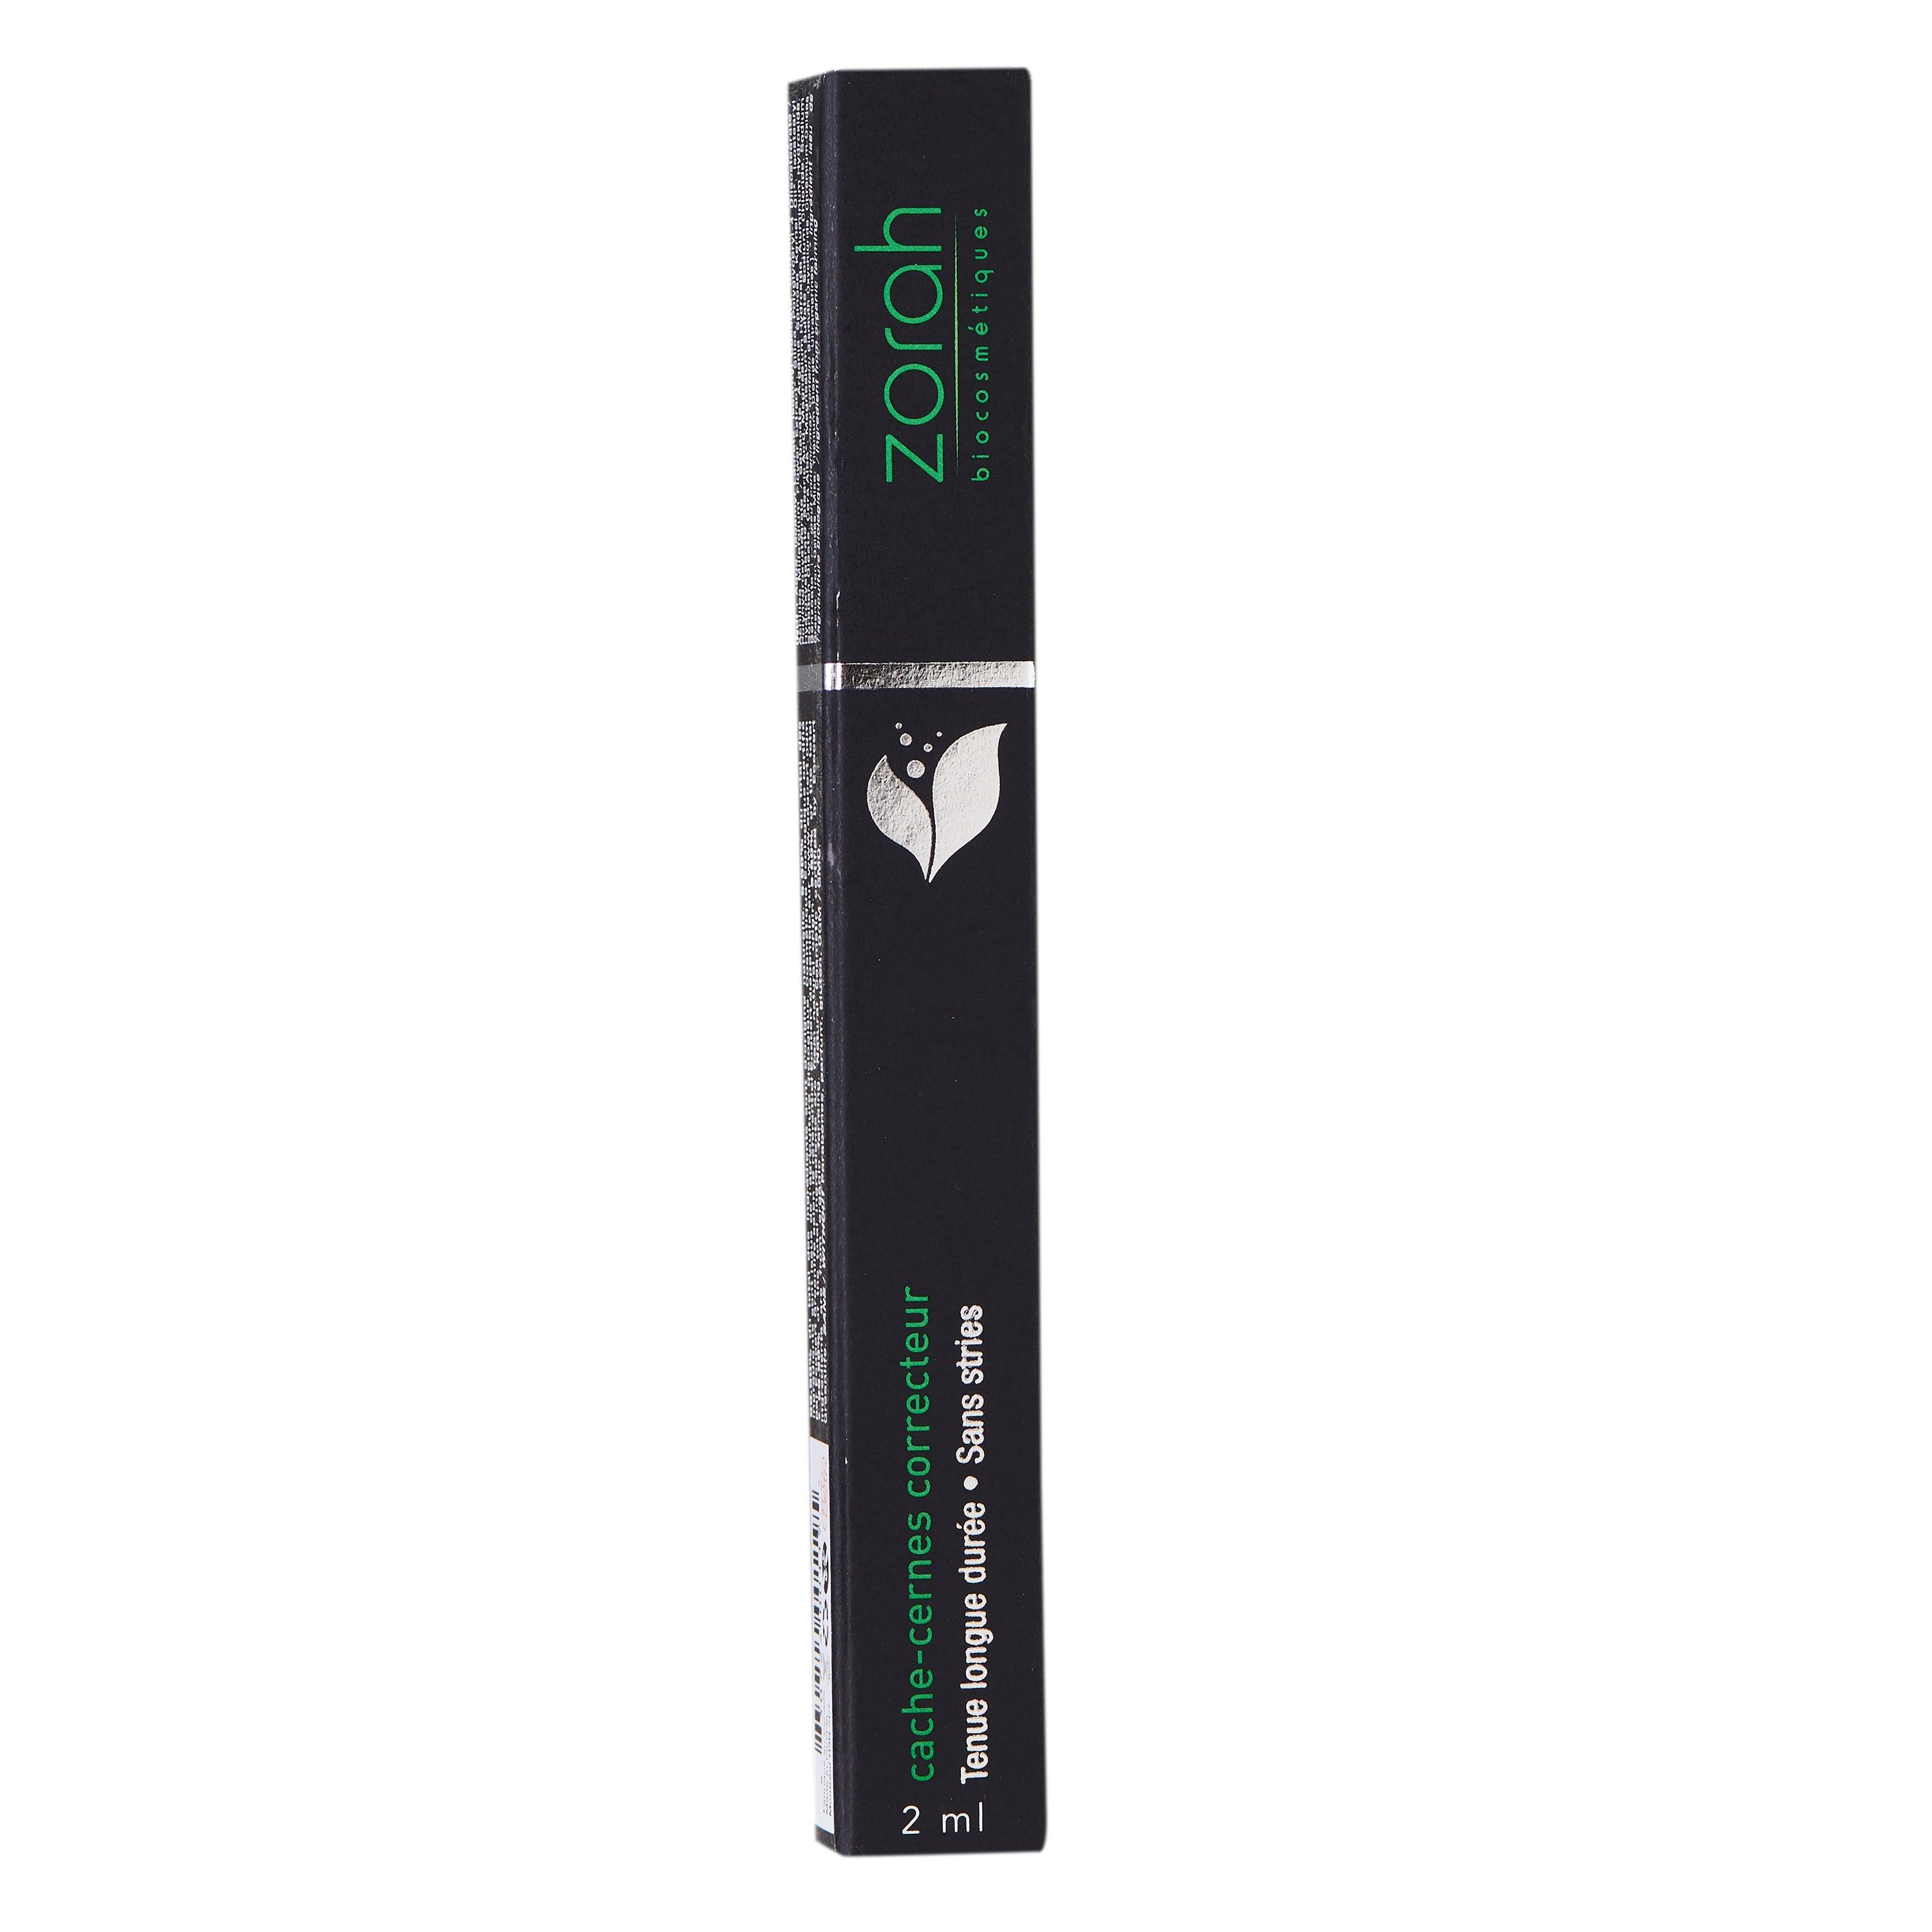 corrective concealer pen - Zorah biocosmétiques